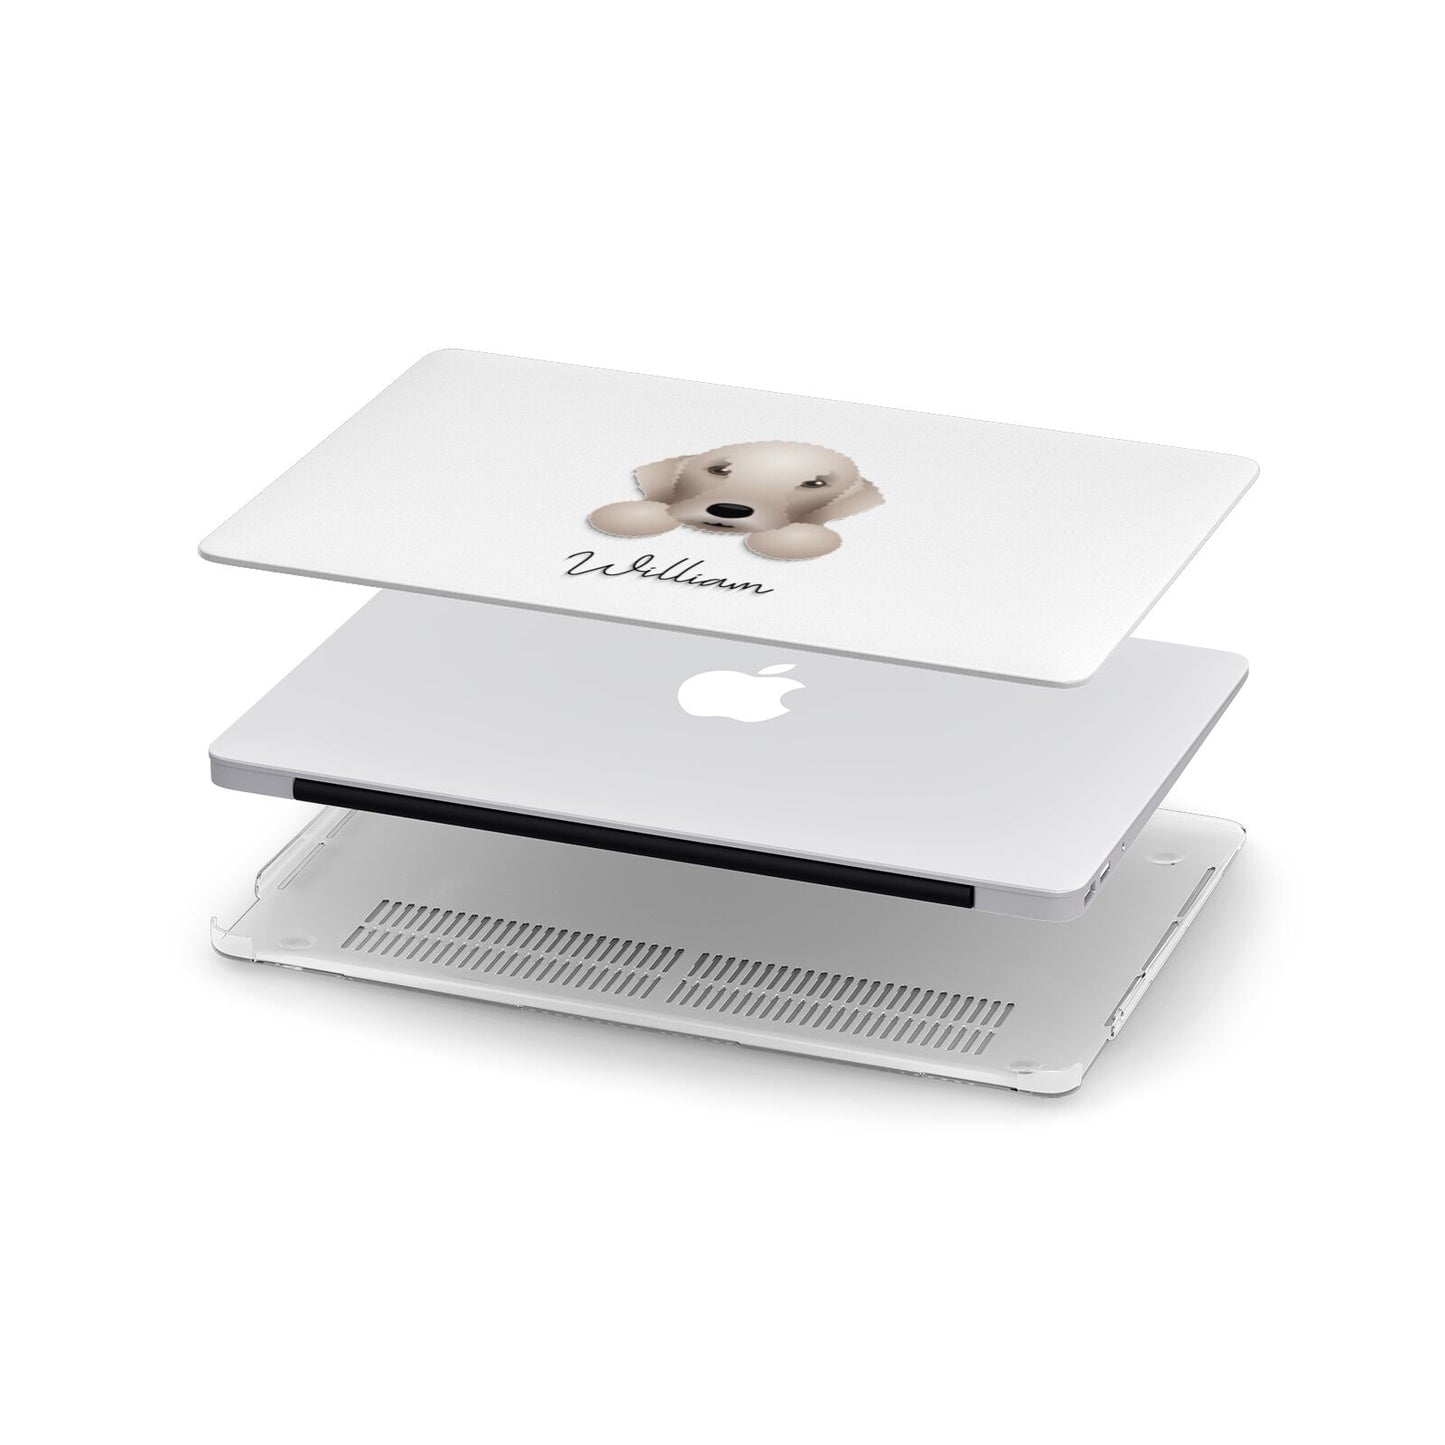 Bedlington Terrier Personalised Apple MacBook Case in Detail